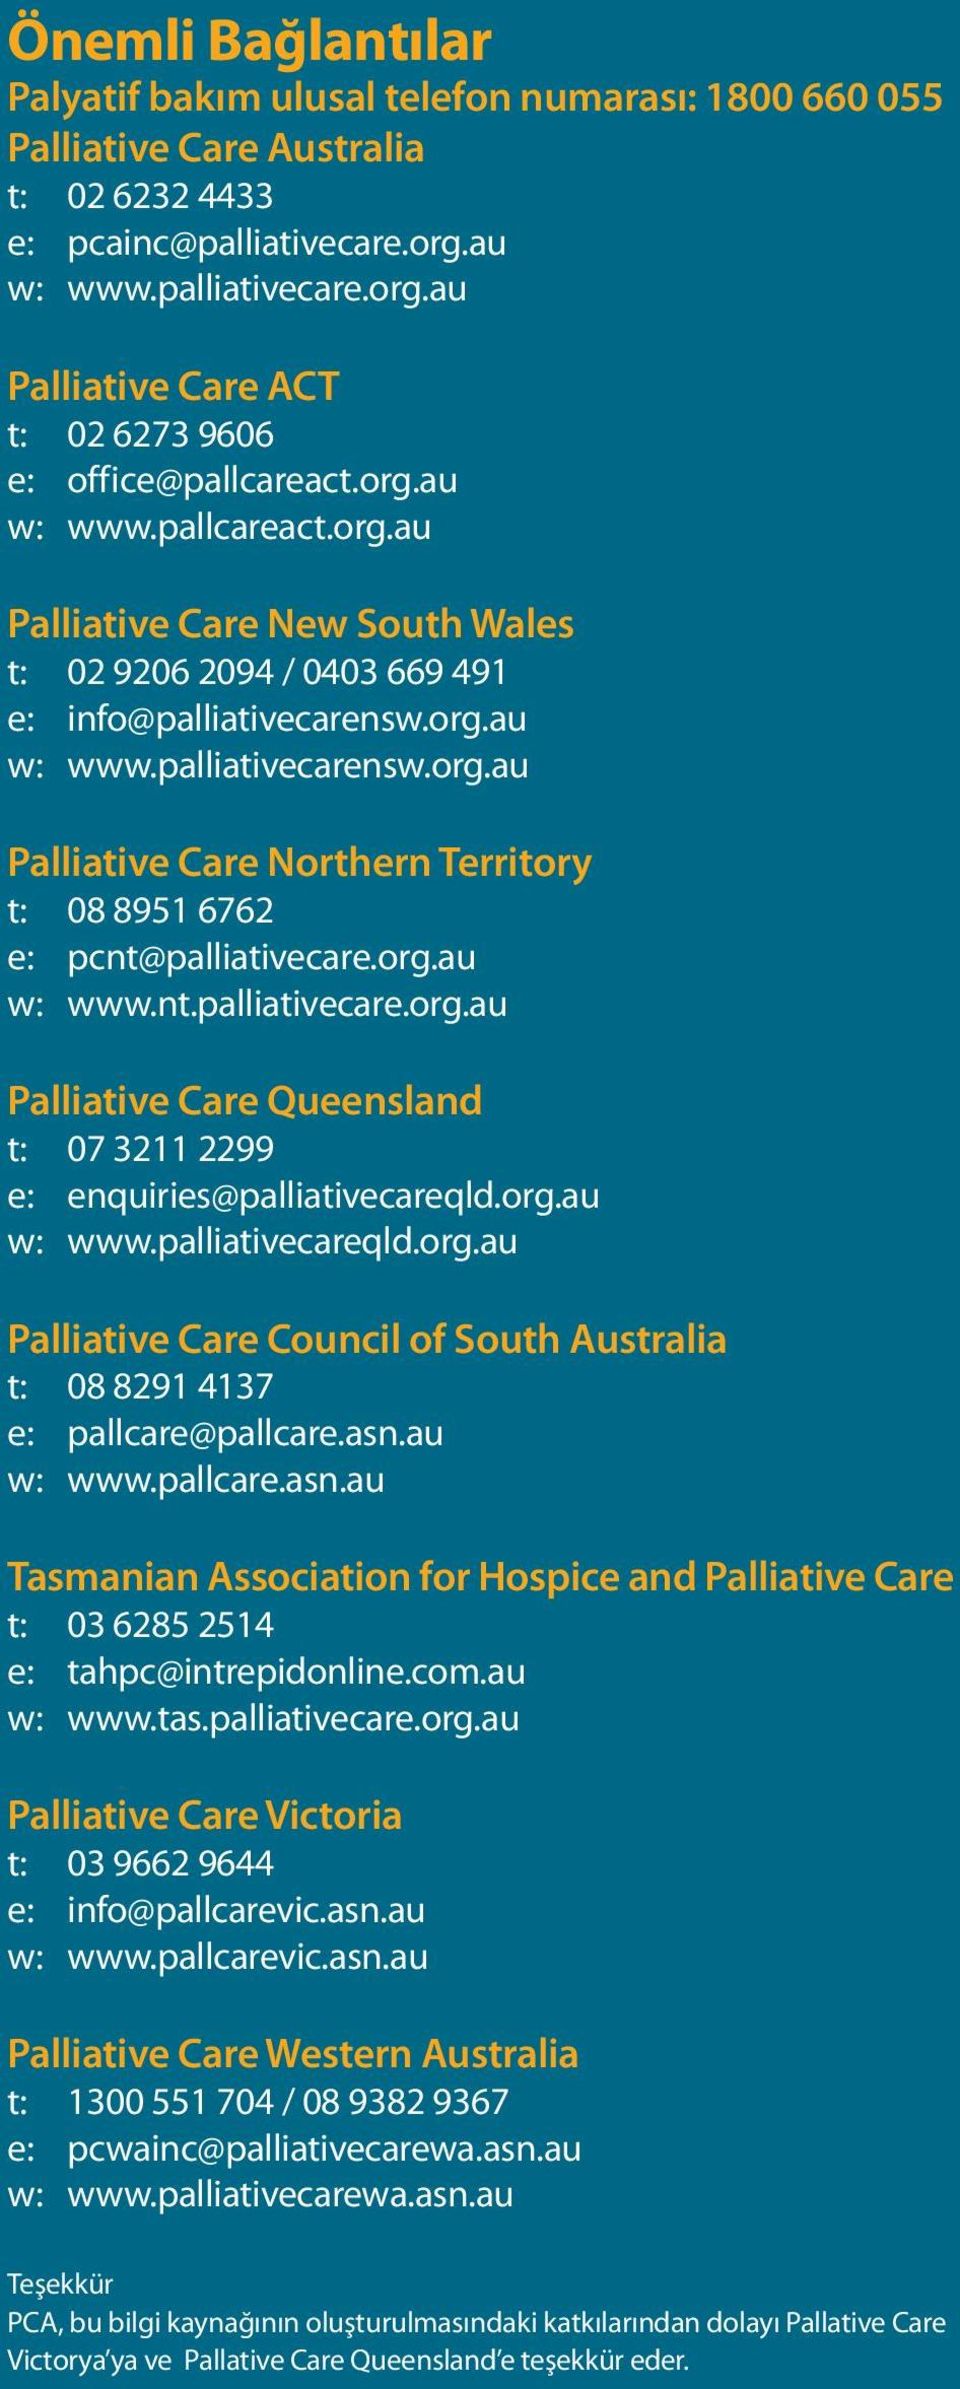 org.au w: www.palliativecarensw.org.au Palliative Care Northern Territory t: 08 8951 6762 e: pcnt@palliativecare.org.au w: www.nt.palliativecare.org.au Palliative Care Queensland t: 07 3211 2299 e: enquiries@palliativecareqld.